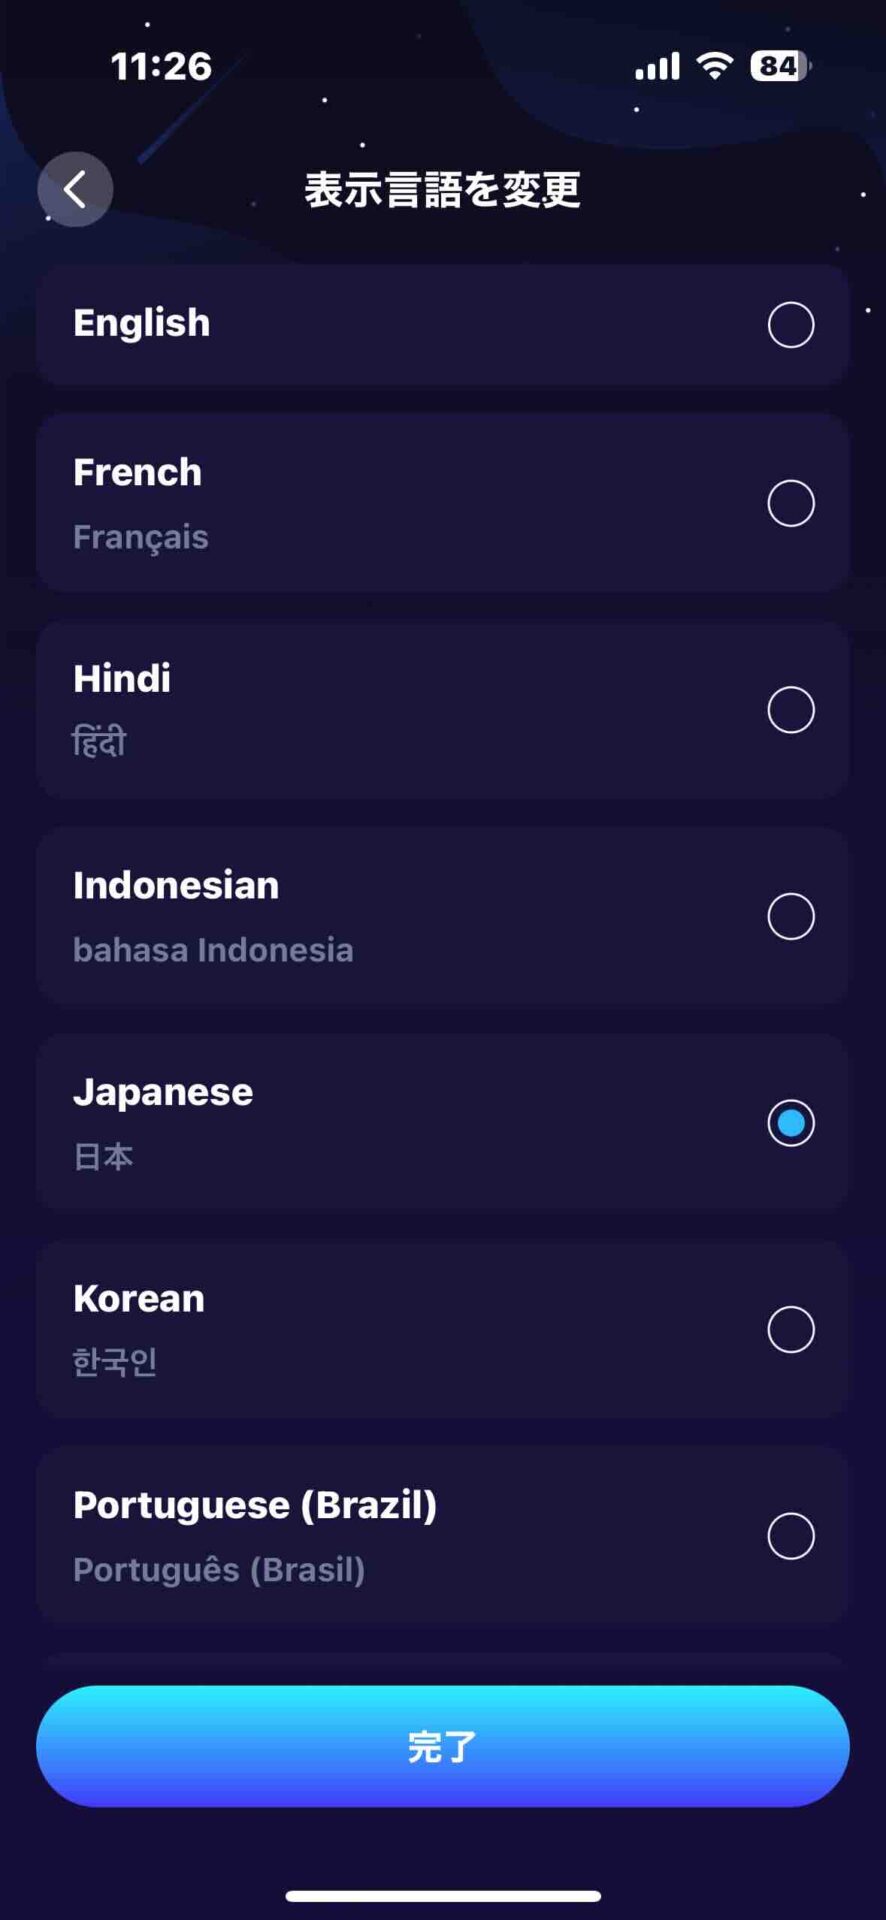 アプリの表示言語として日本語も選べる